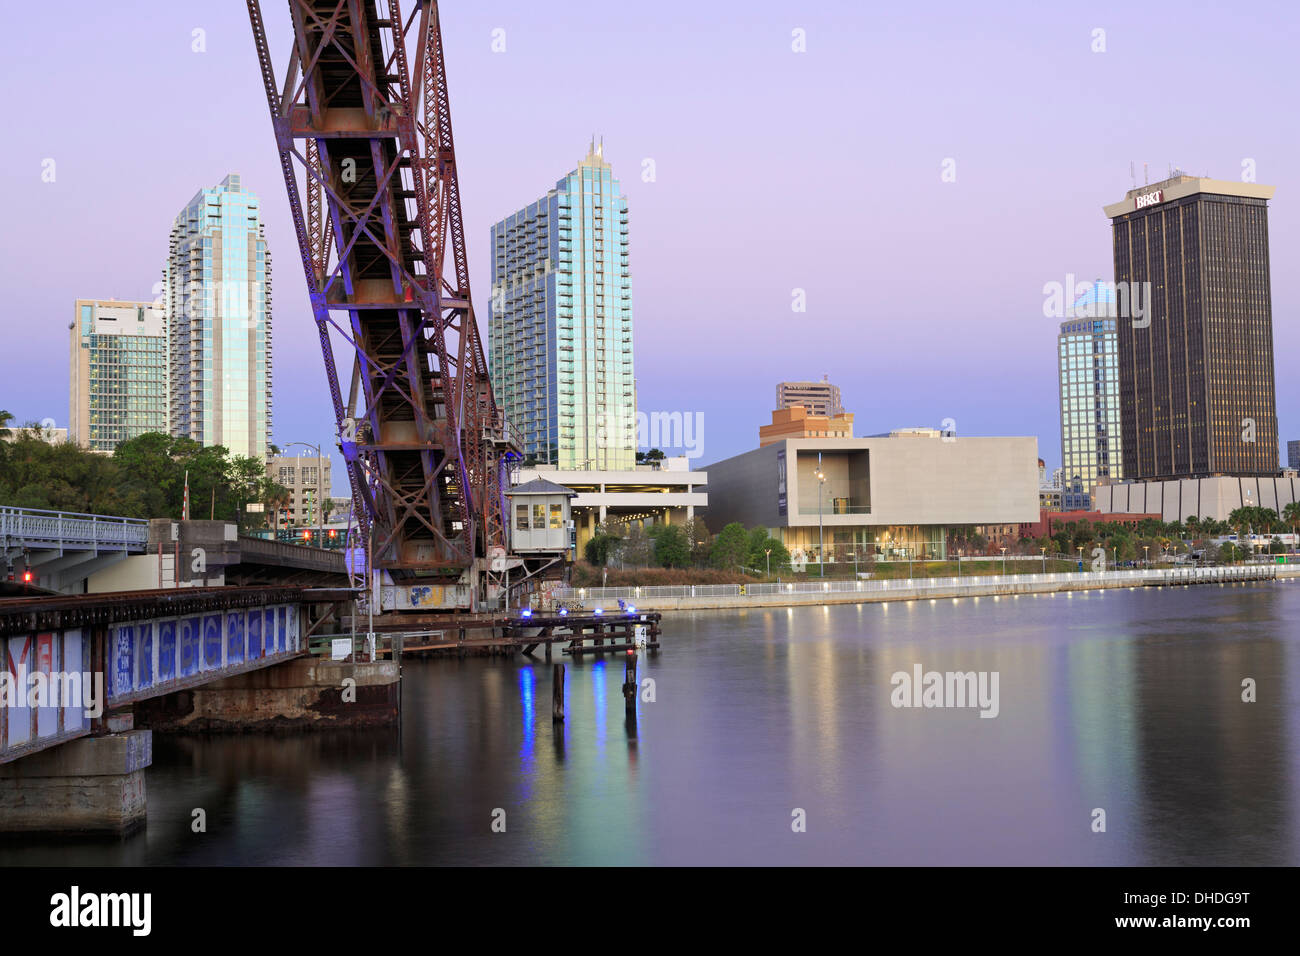 Cass Street e CSX ponti sul fiume Hillsborough, Tampa, Florida, Stati Uniti d'America, America del Nord Foto Stock